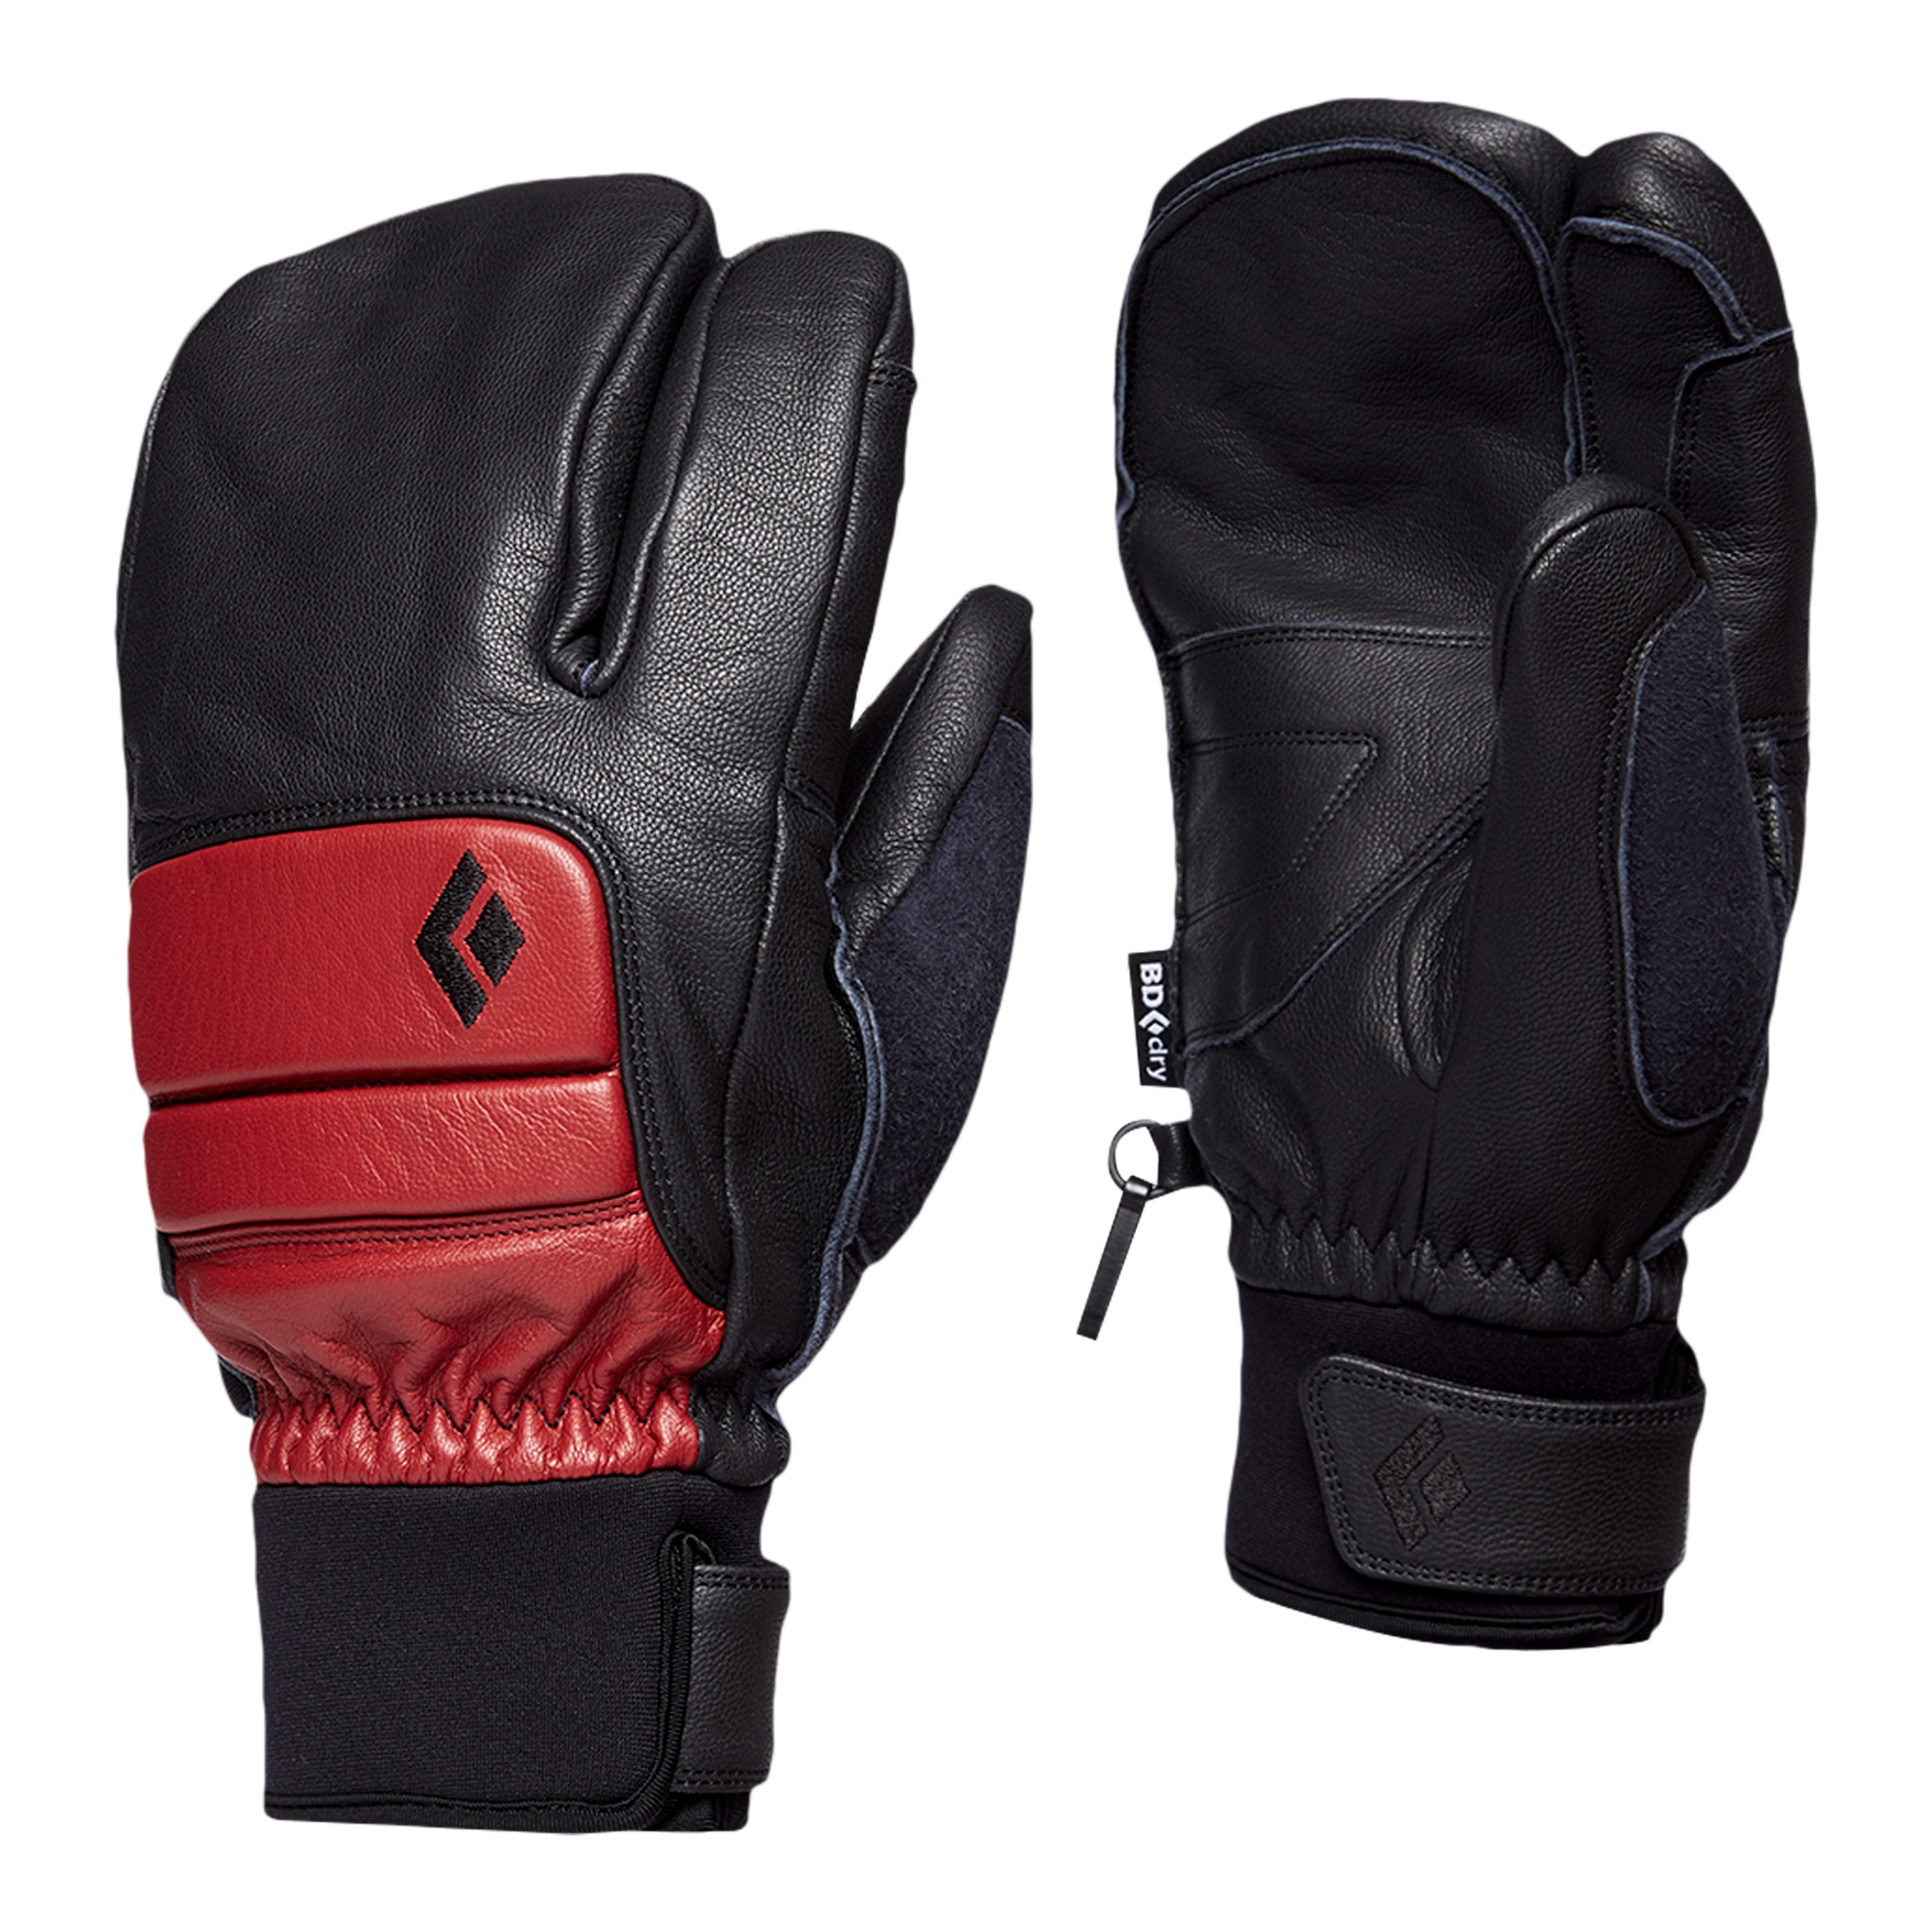 Black Diamond Equipment Men's Spark Finger Gloves, Large Dark Crimson